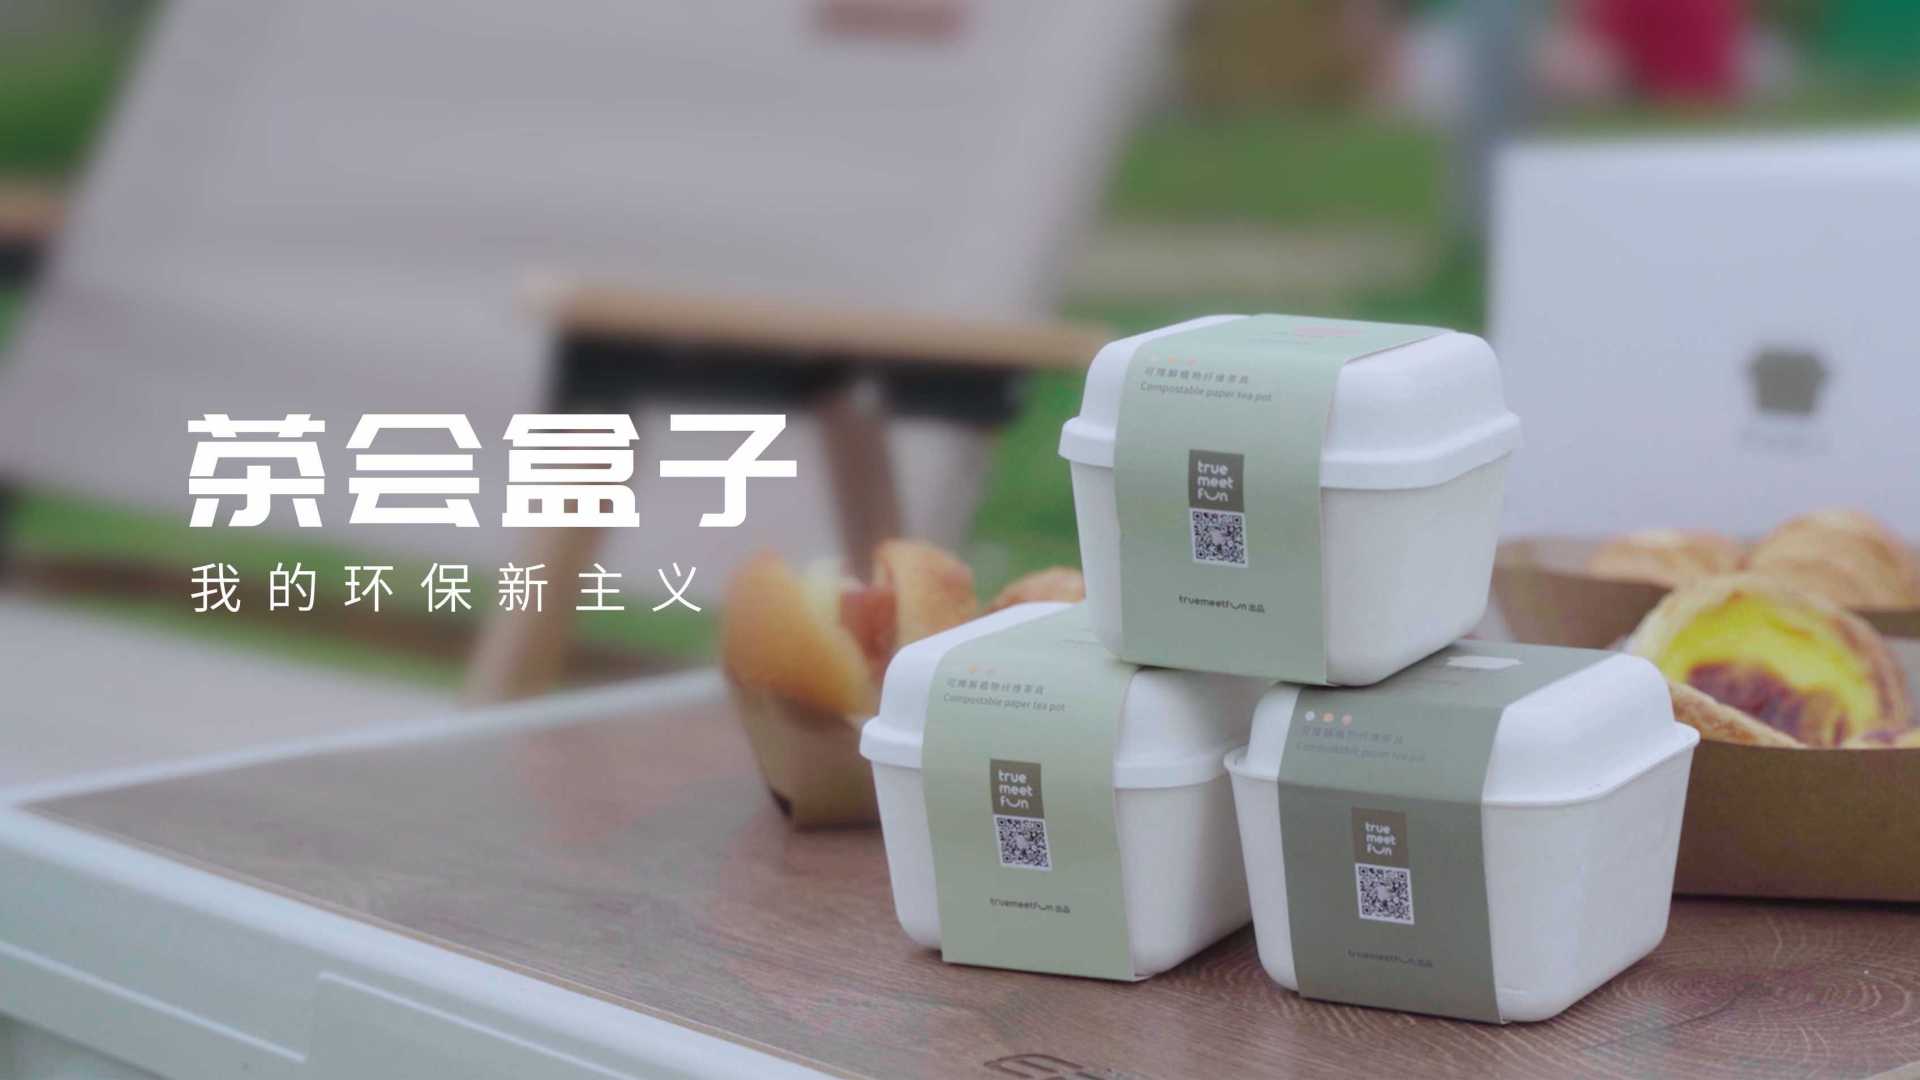 [商业-广告片]茶会盒子产品广告